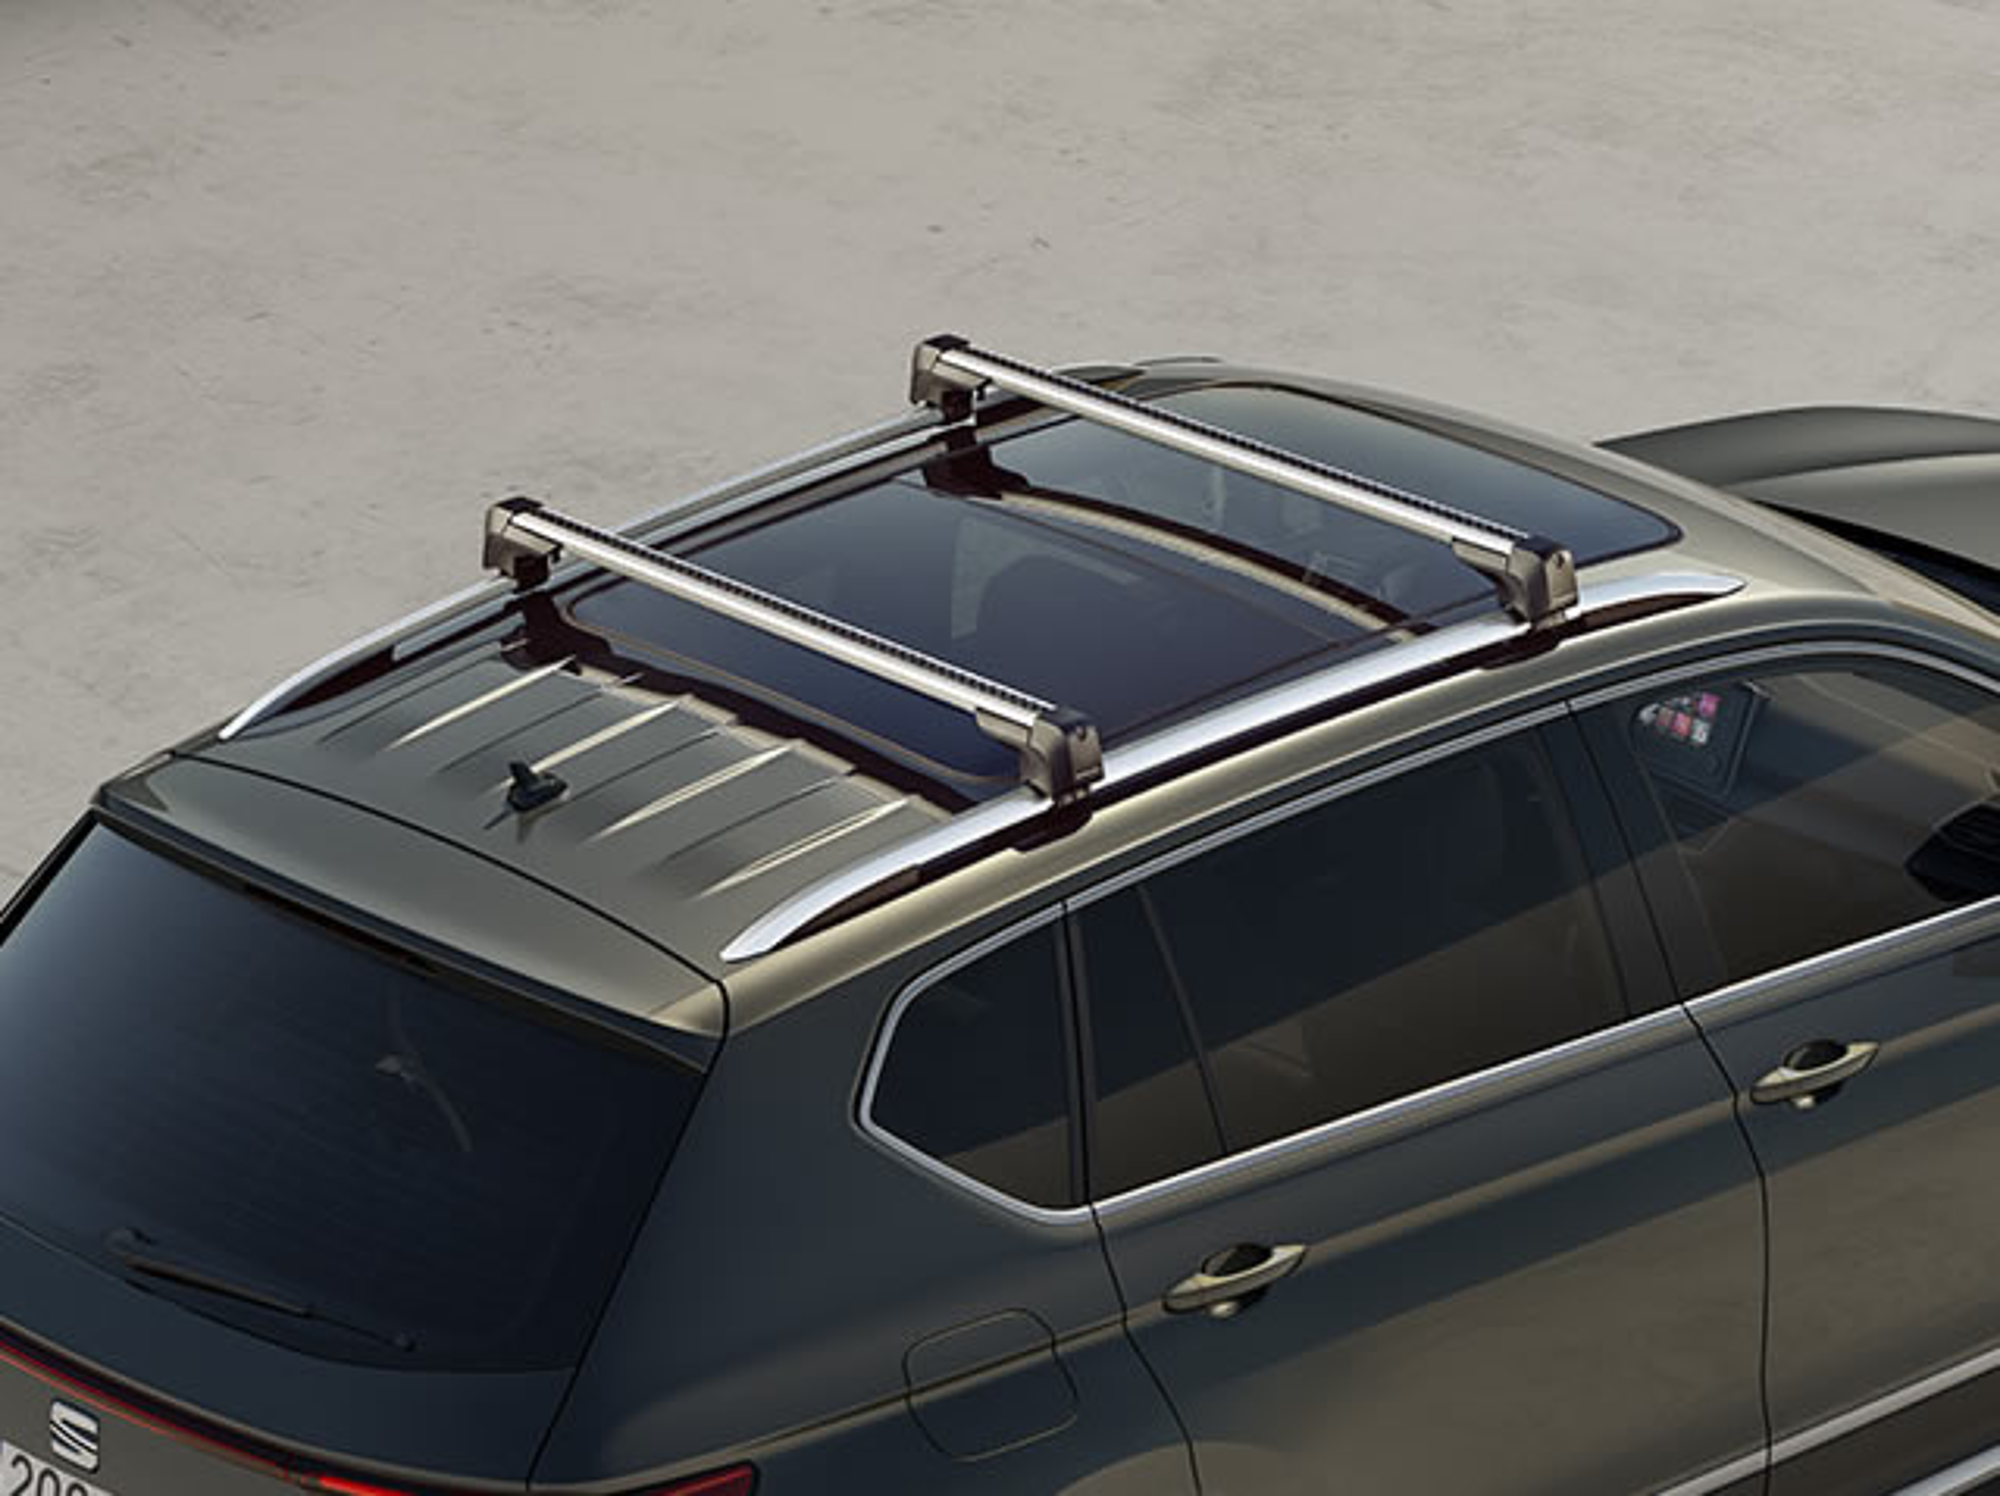 Barres de toit : Toute une gamme de barres de toit pré-montées pour voiture